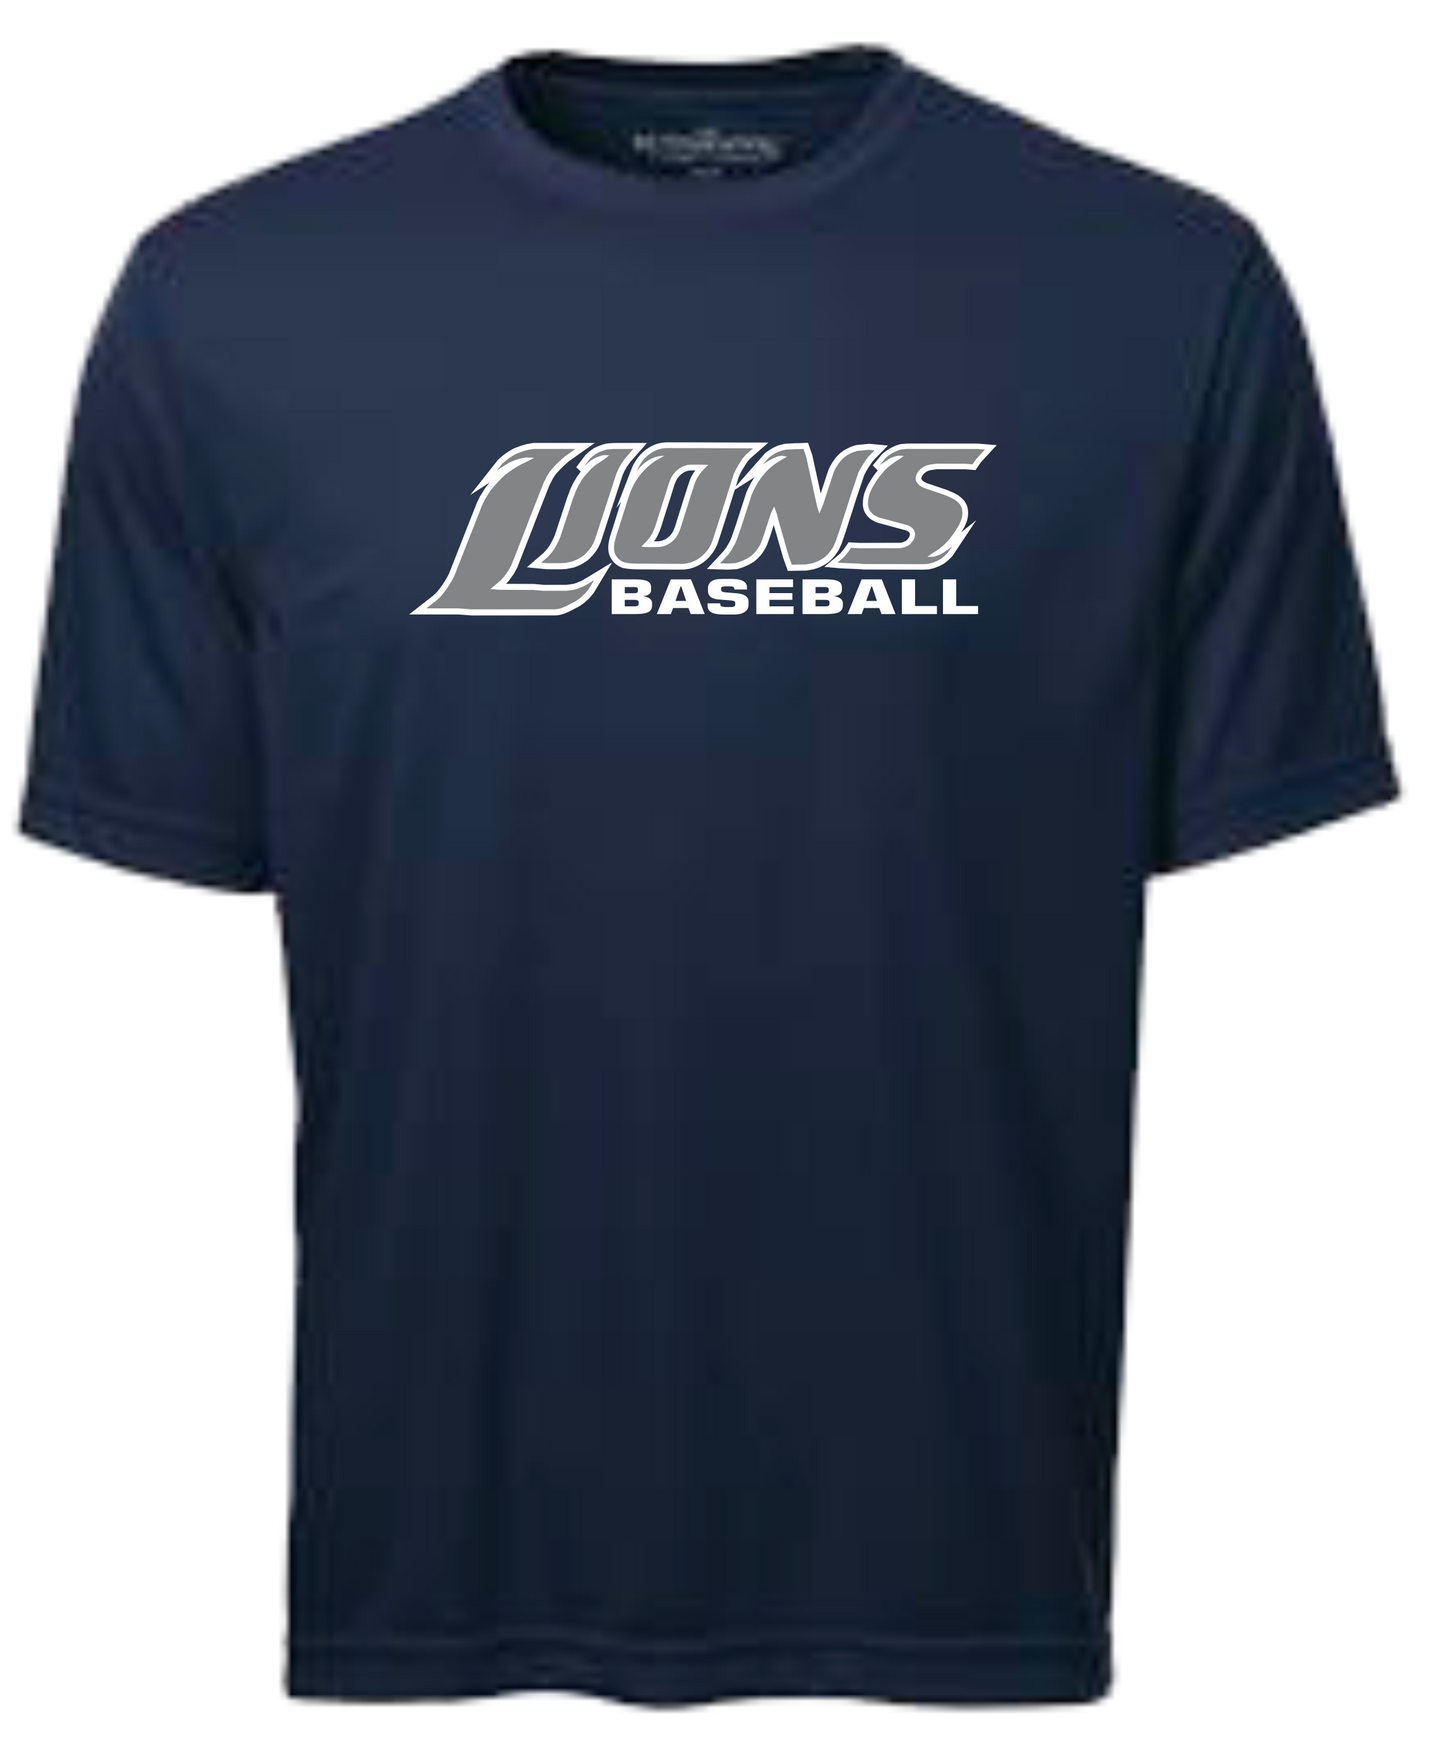 Lions Baseball  Unisex and Youth Short Sleeve DriFit Navy Tshirt